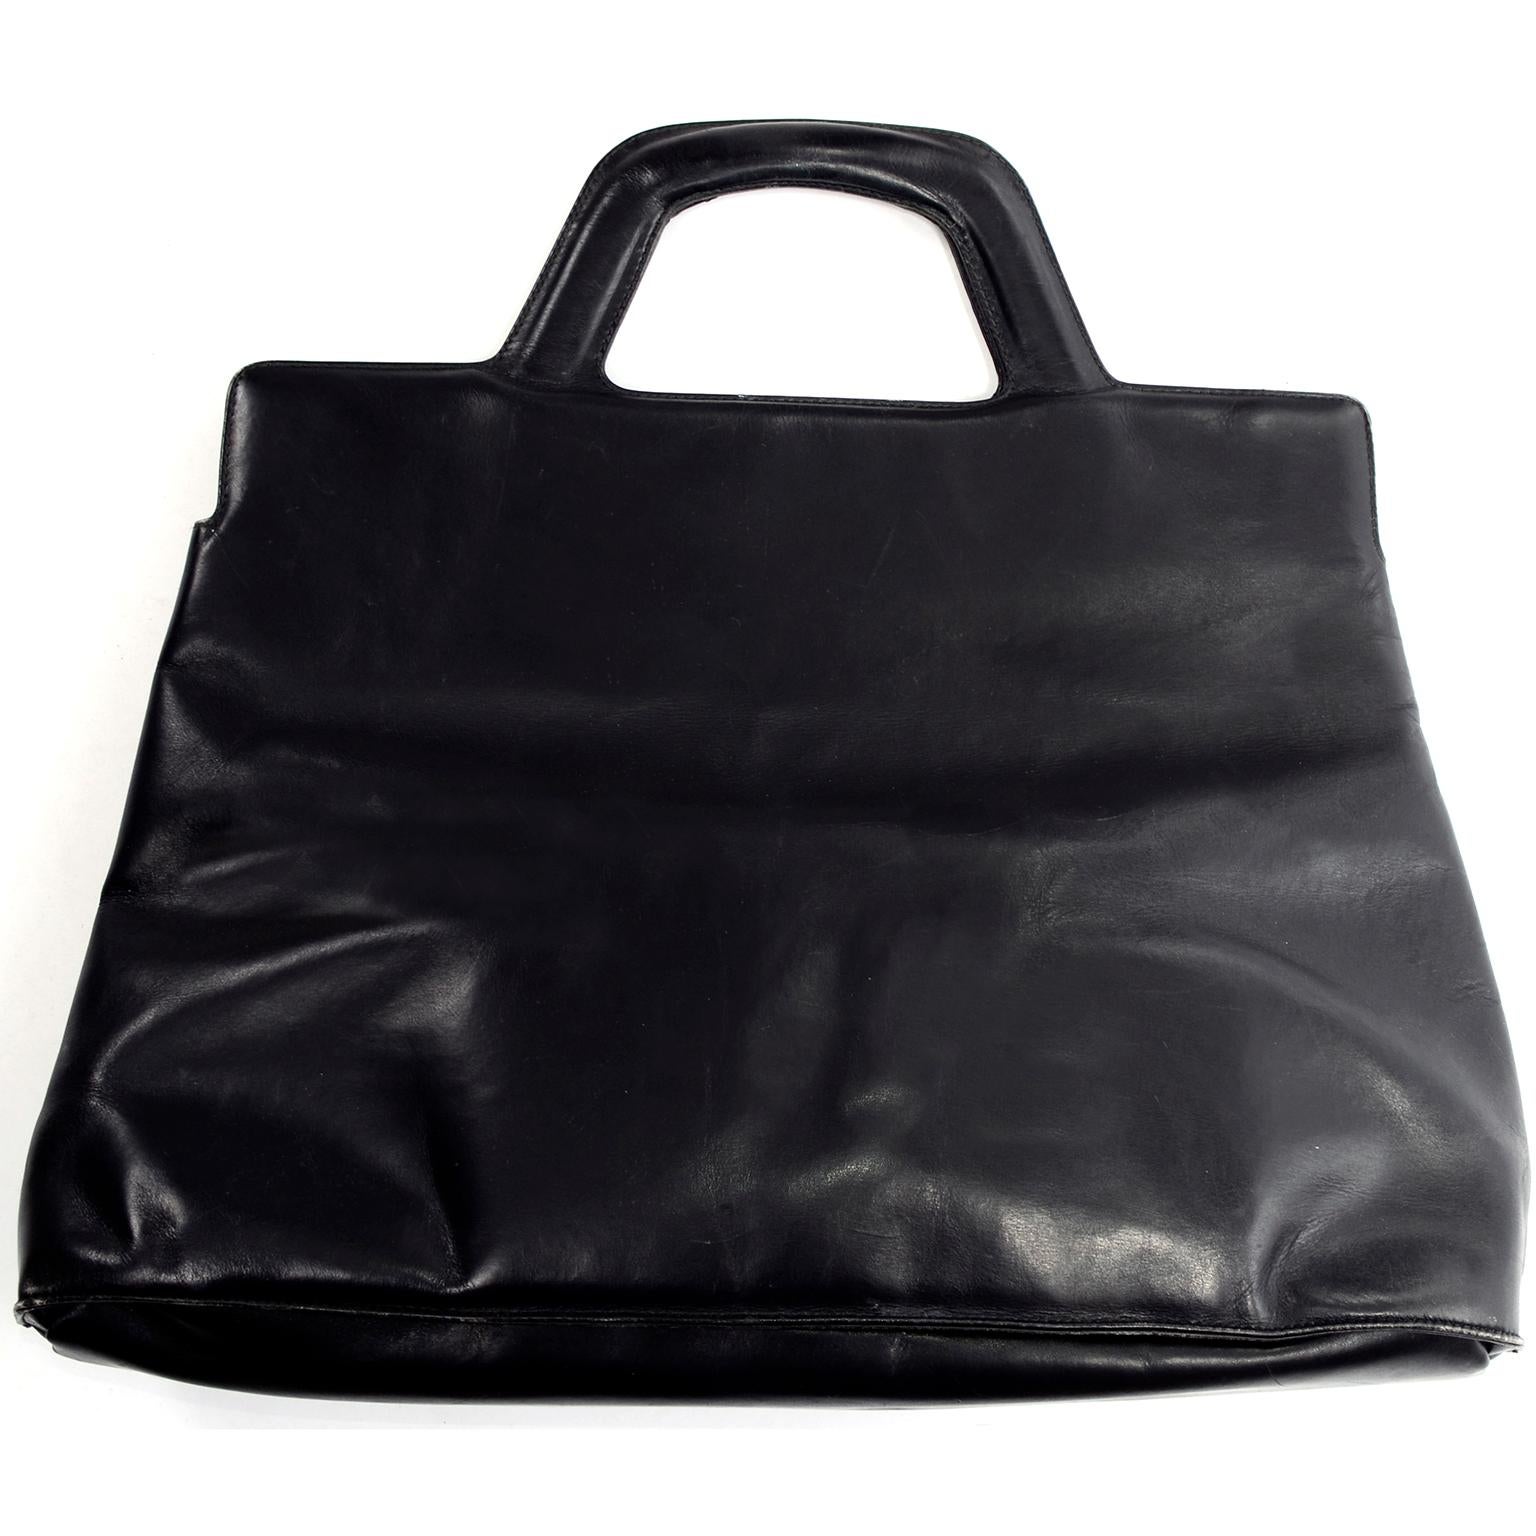 Salvatore Ferragamo Black Leather Top Handle Tote Handbag Shoulder Bag 1